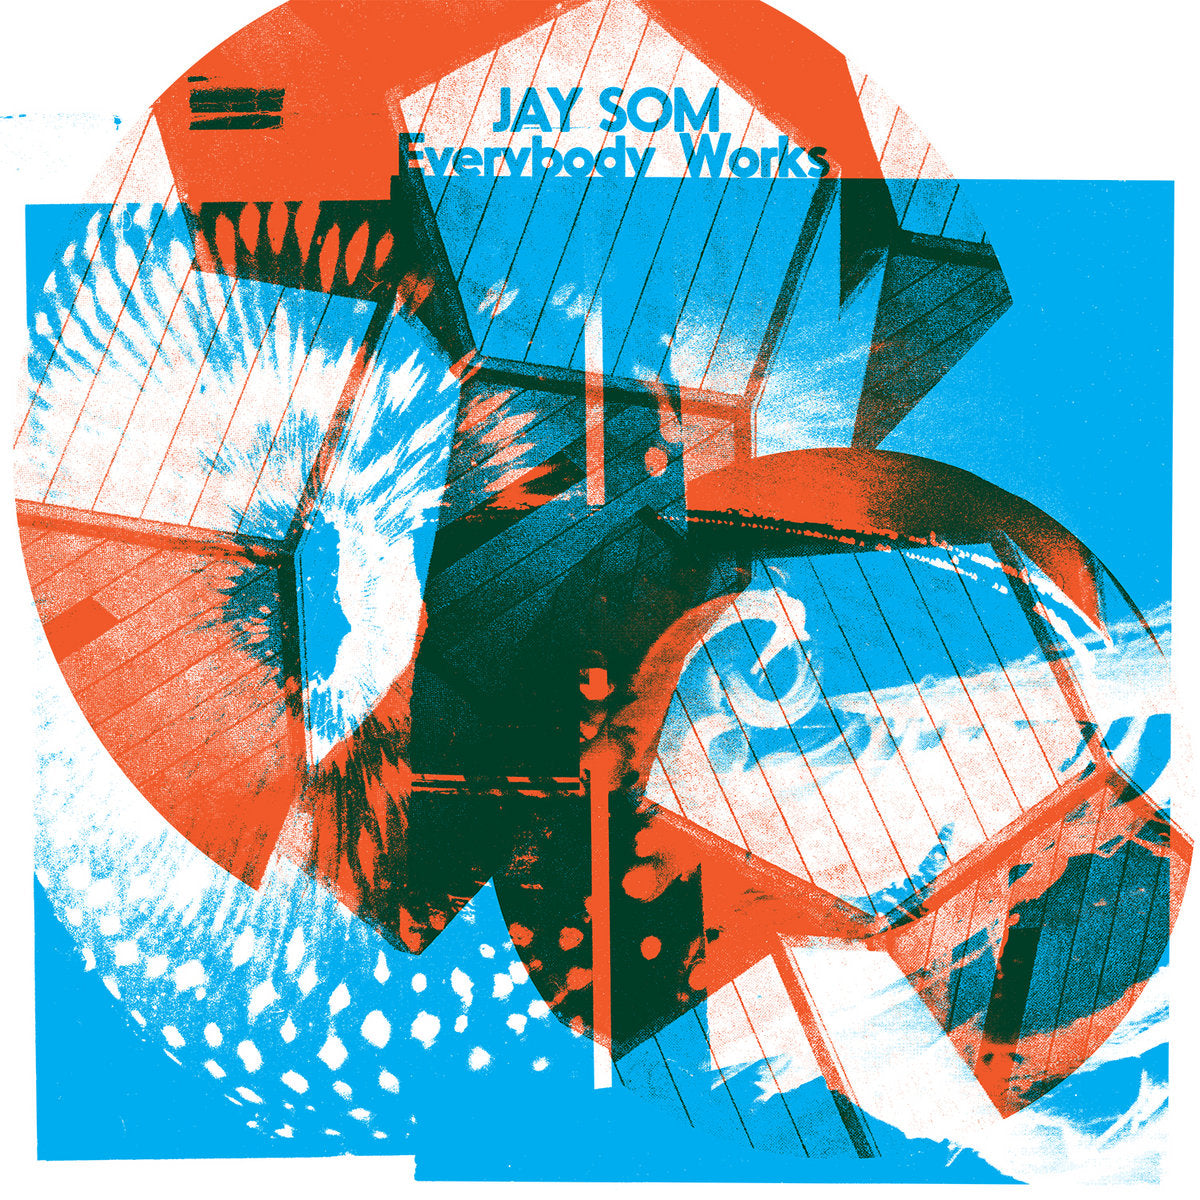 JAY SOM - EVERYBODY WORKS Vinyl LP